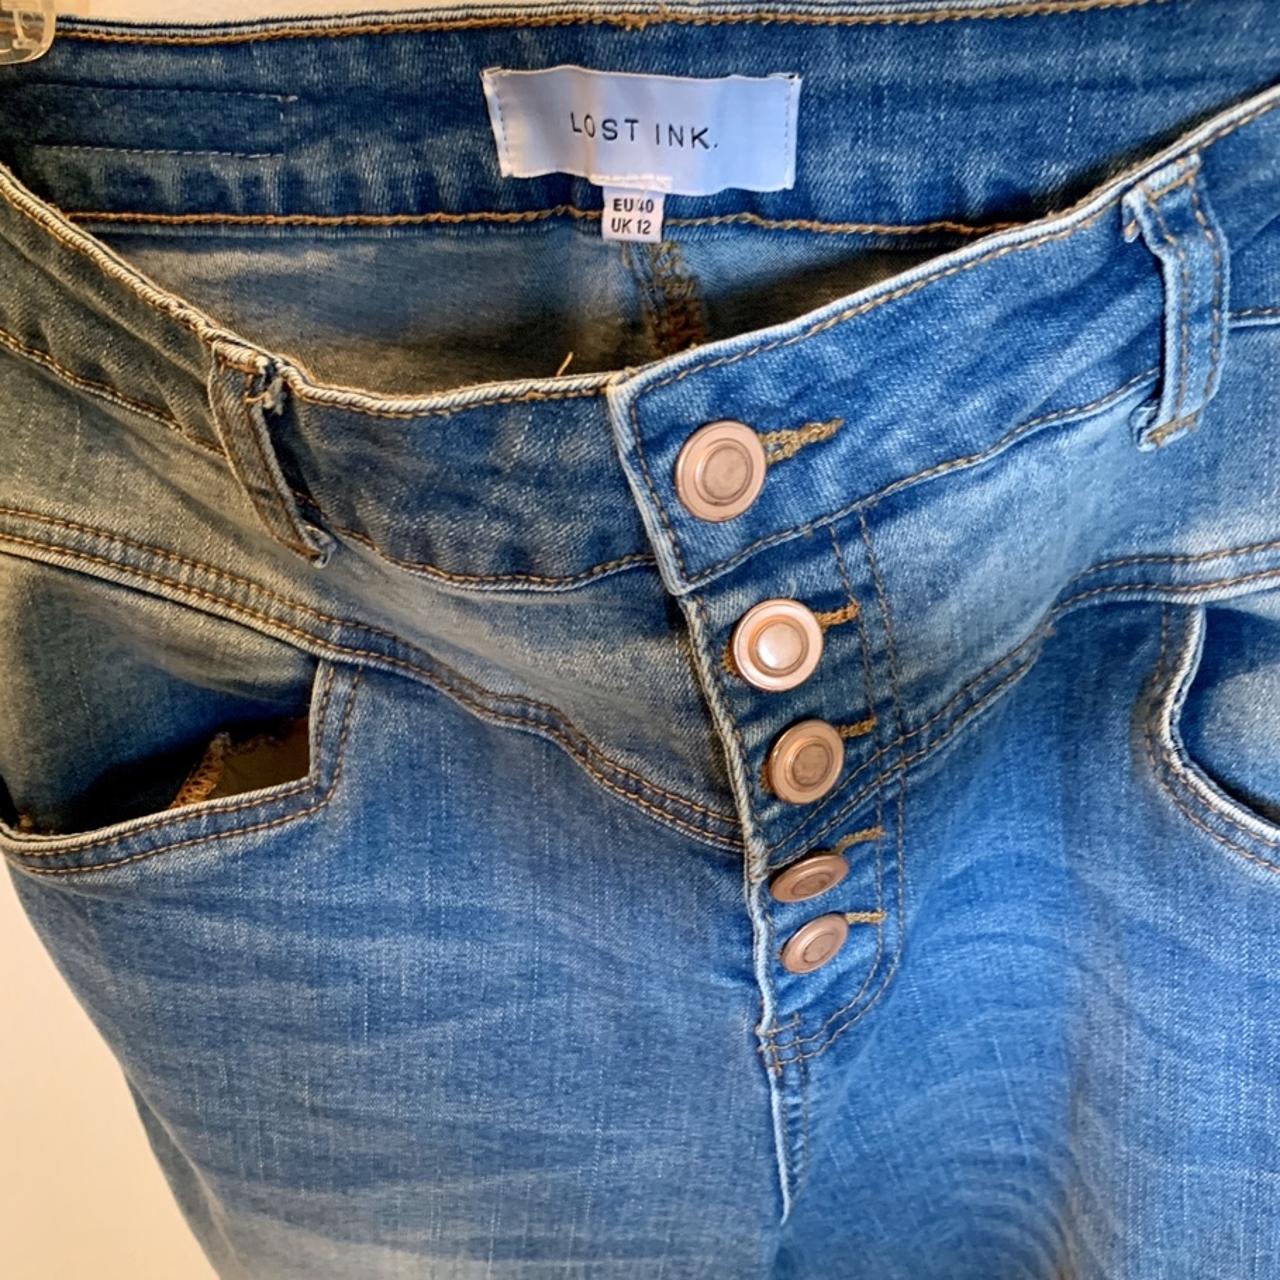 Product Image 4 - Indigo High Waist Skinny Jeans

UK